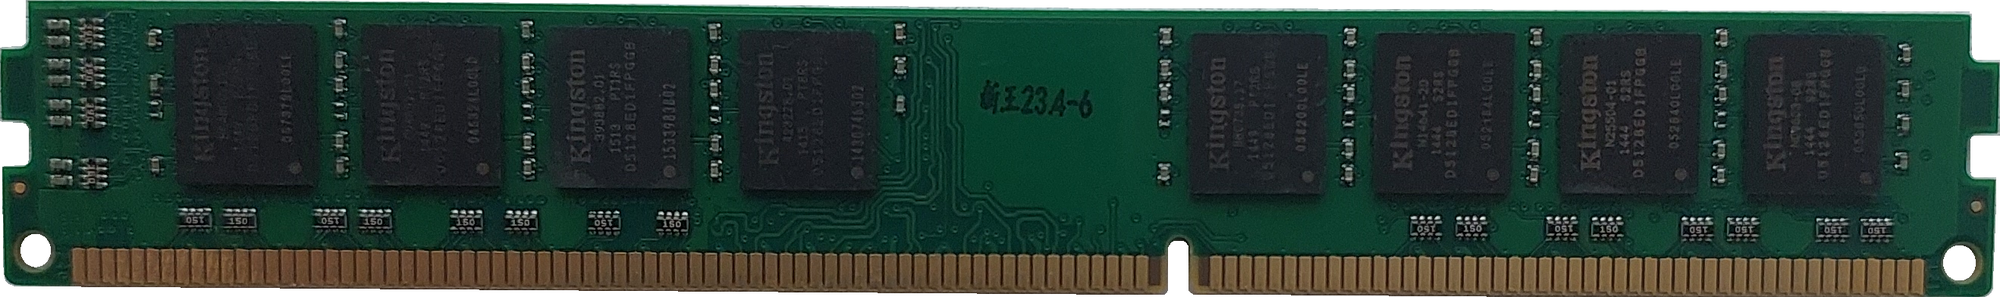 Оперативная память Kingston 8 ГБ DDR3 1600 МГц DIMM CL11 KVR16N11/8